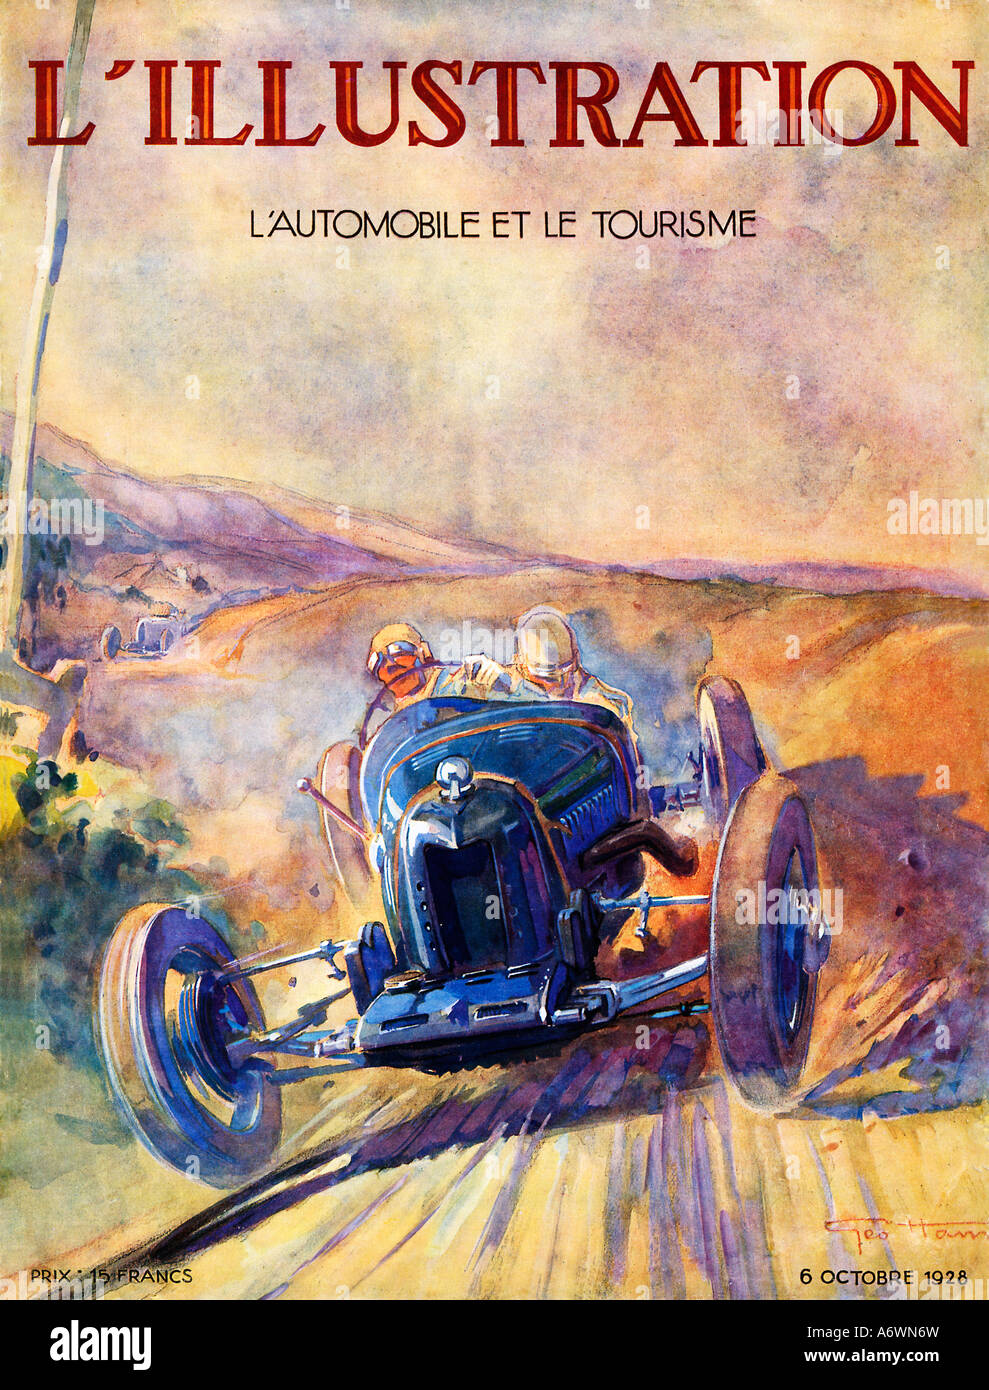 LIllustration 1928 copertina della rivista francese di questa edizione su vetture turismo e mostrando un auto in una corsa su strada Foto Stock